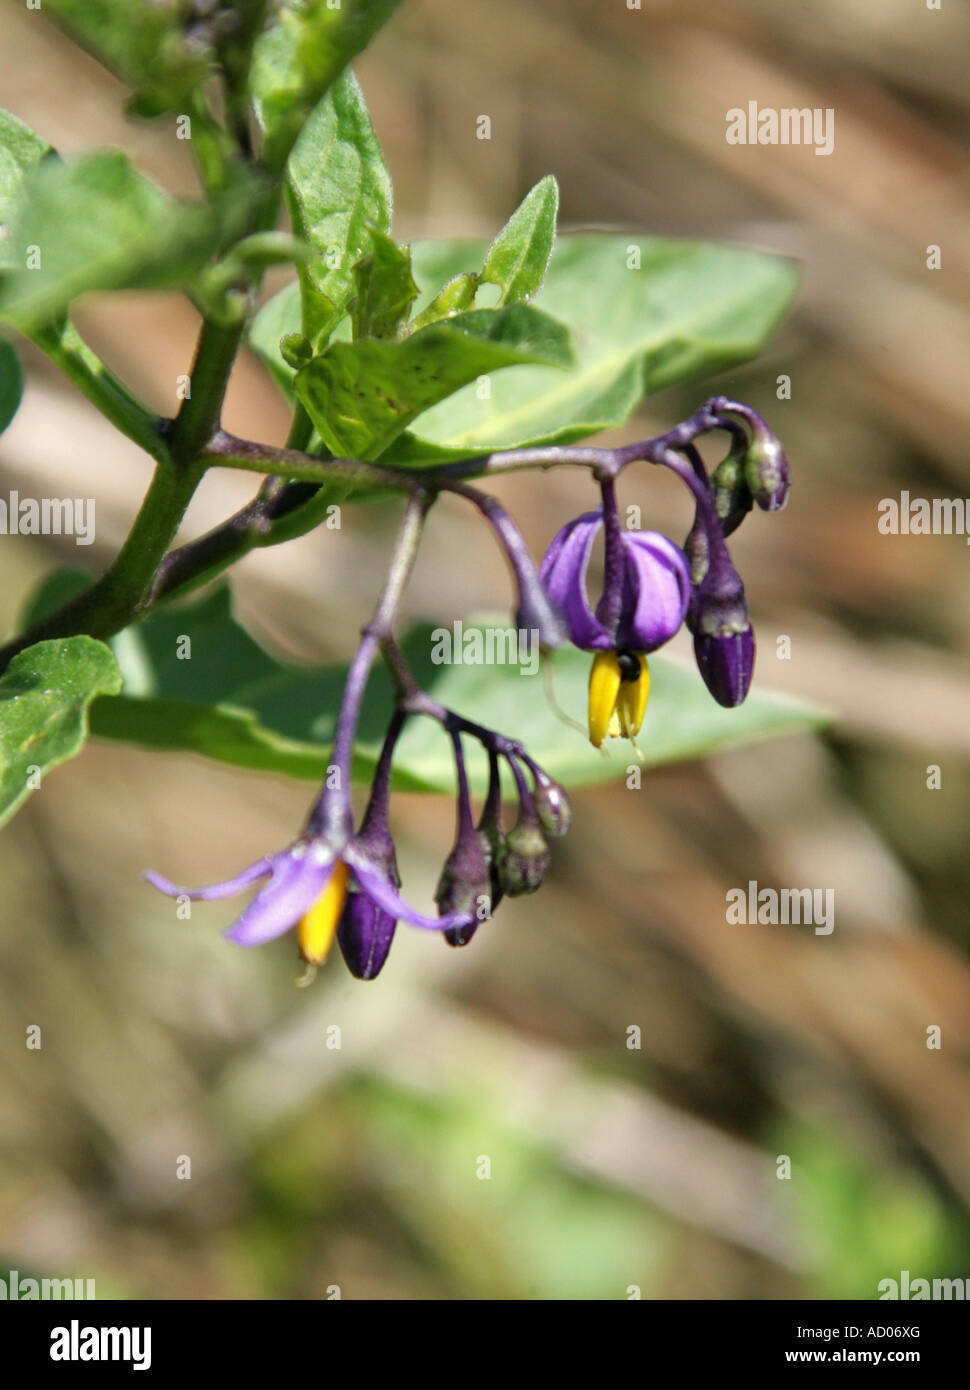 Bittersweet, Solanum dulcamara, Solanaceae Stock Photo